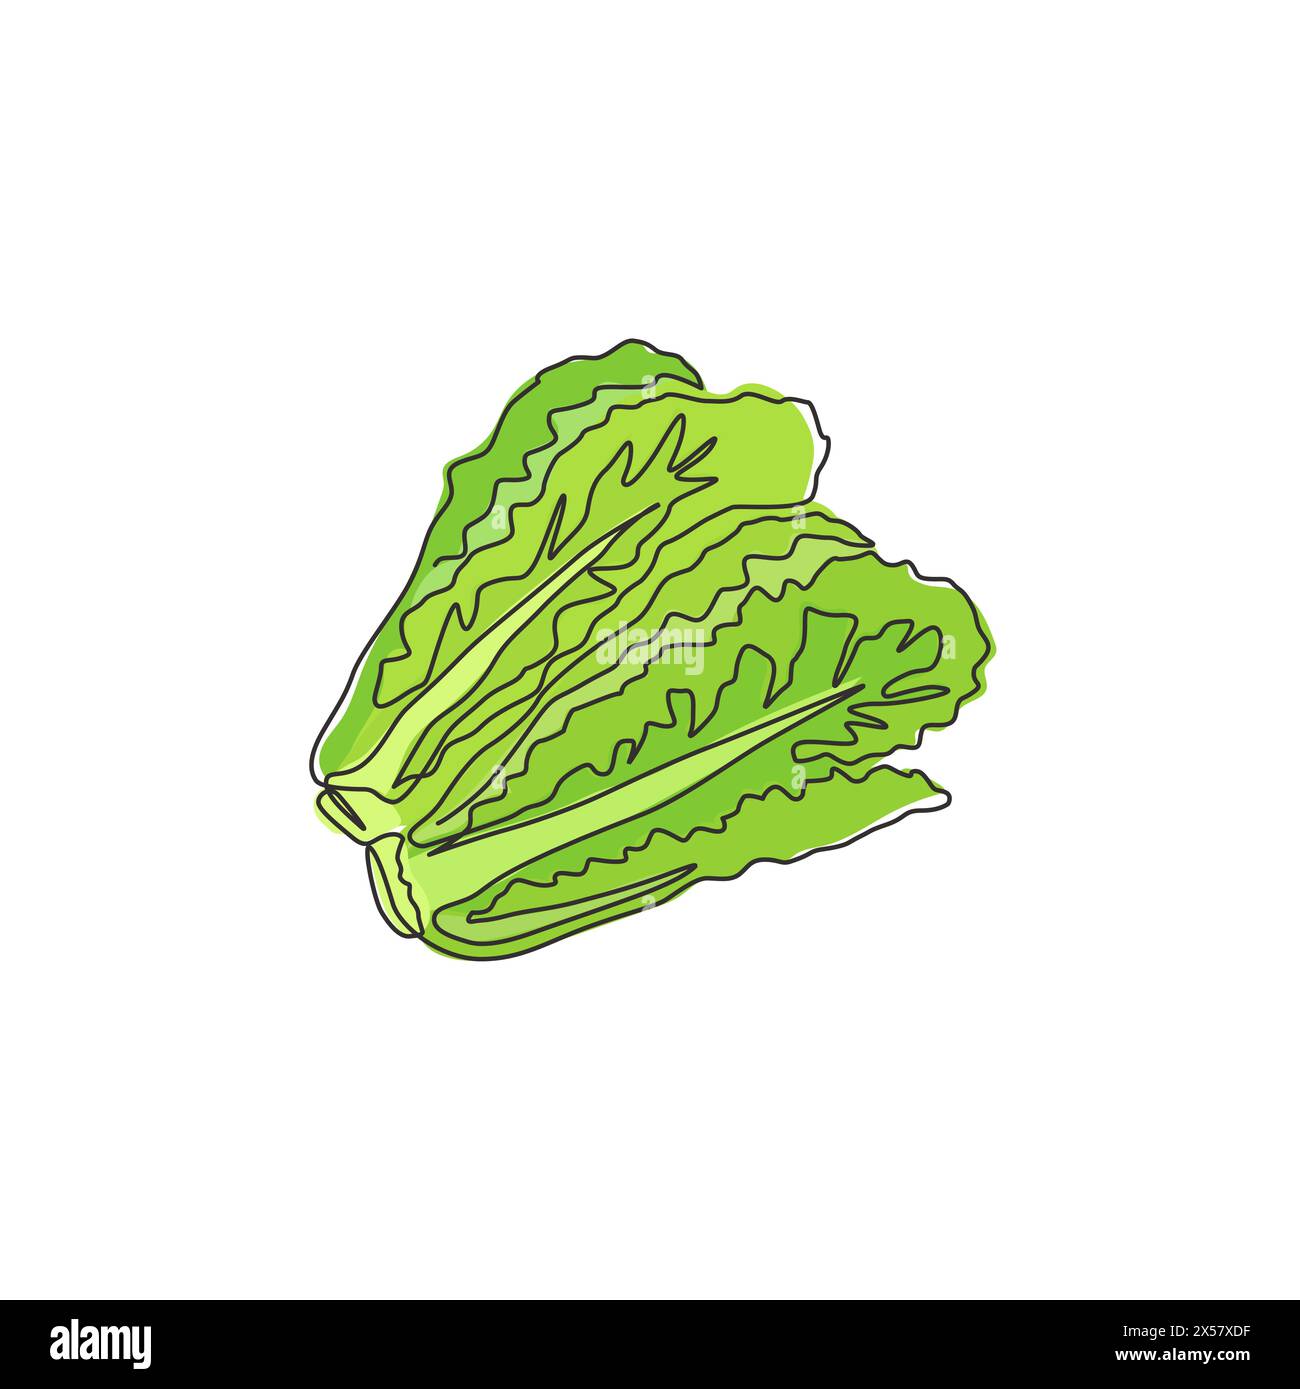 Une seule ligne dessinant des feuilles de laitue verte biologique saines pour l'identité du logo de la ferme. Concept d'ingrédient de salade frais pour icône végétale. Continue moderne Illustration de Vecteur